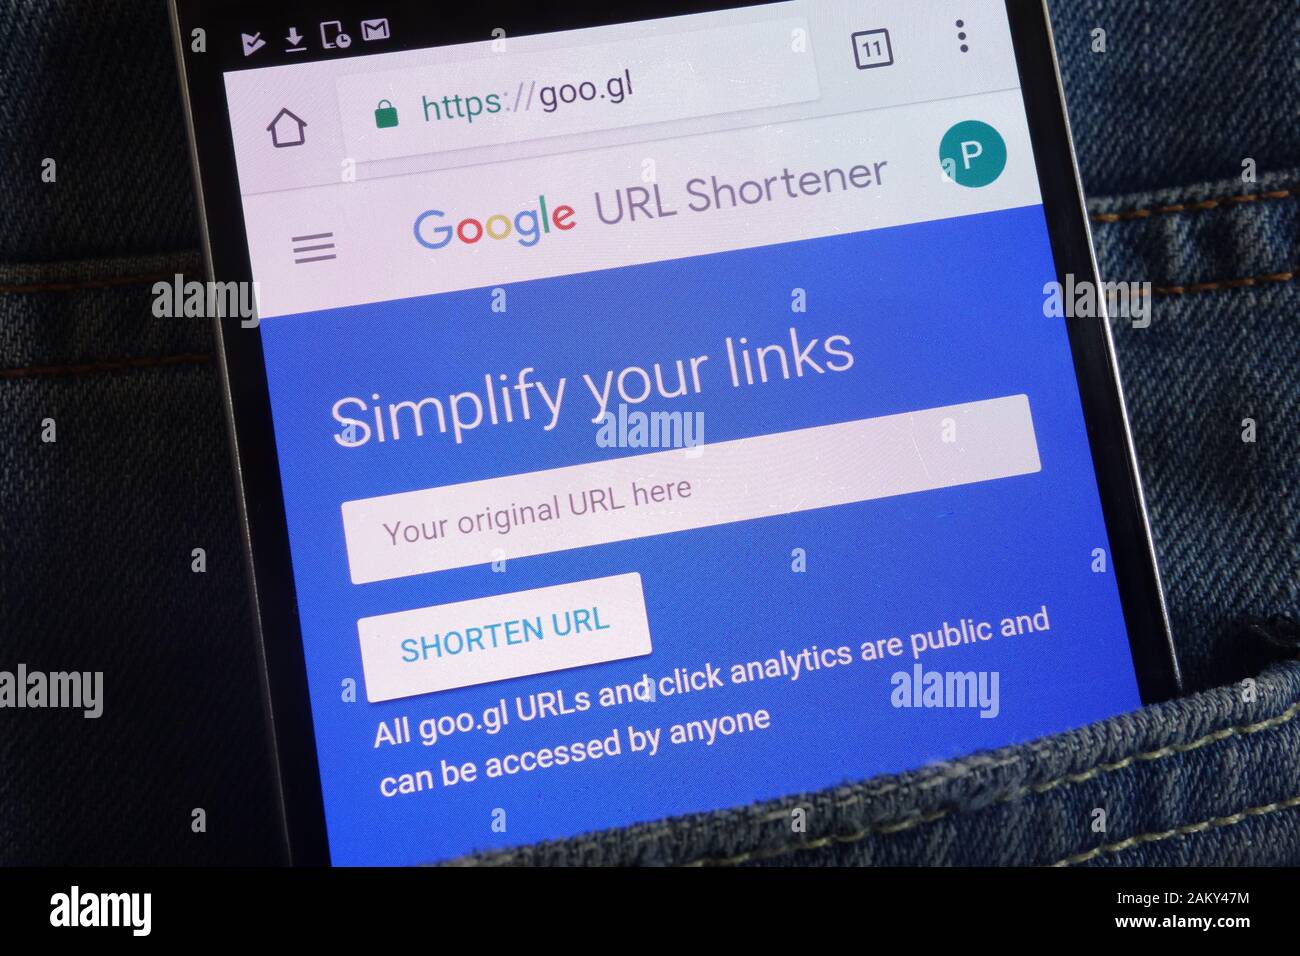 Google URL Shortener website displayed on smartphone hidden in jeans pocket Stock Photo